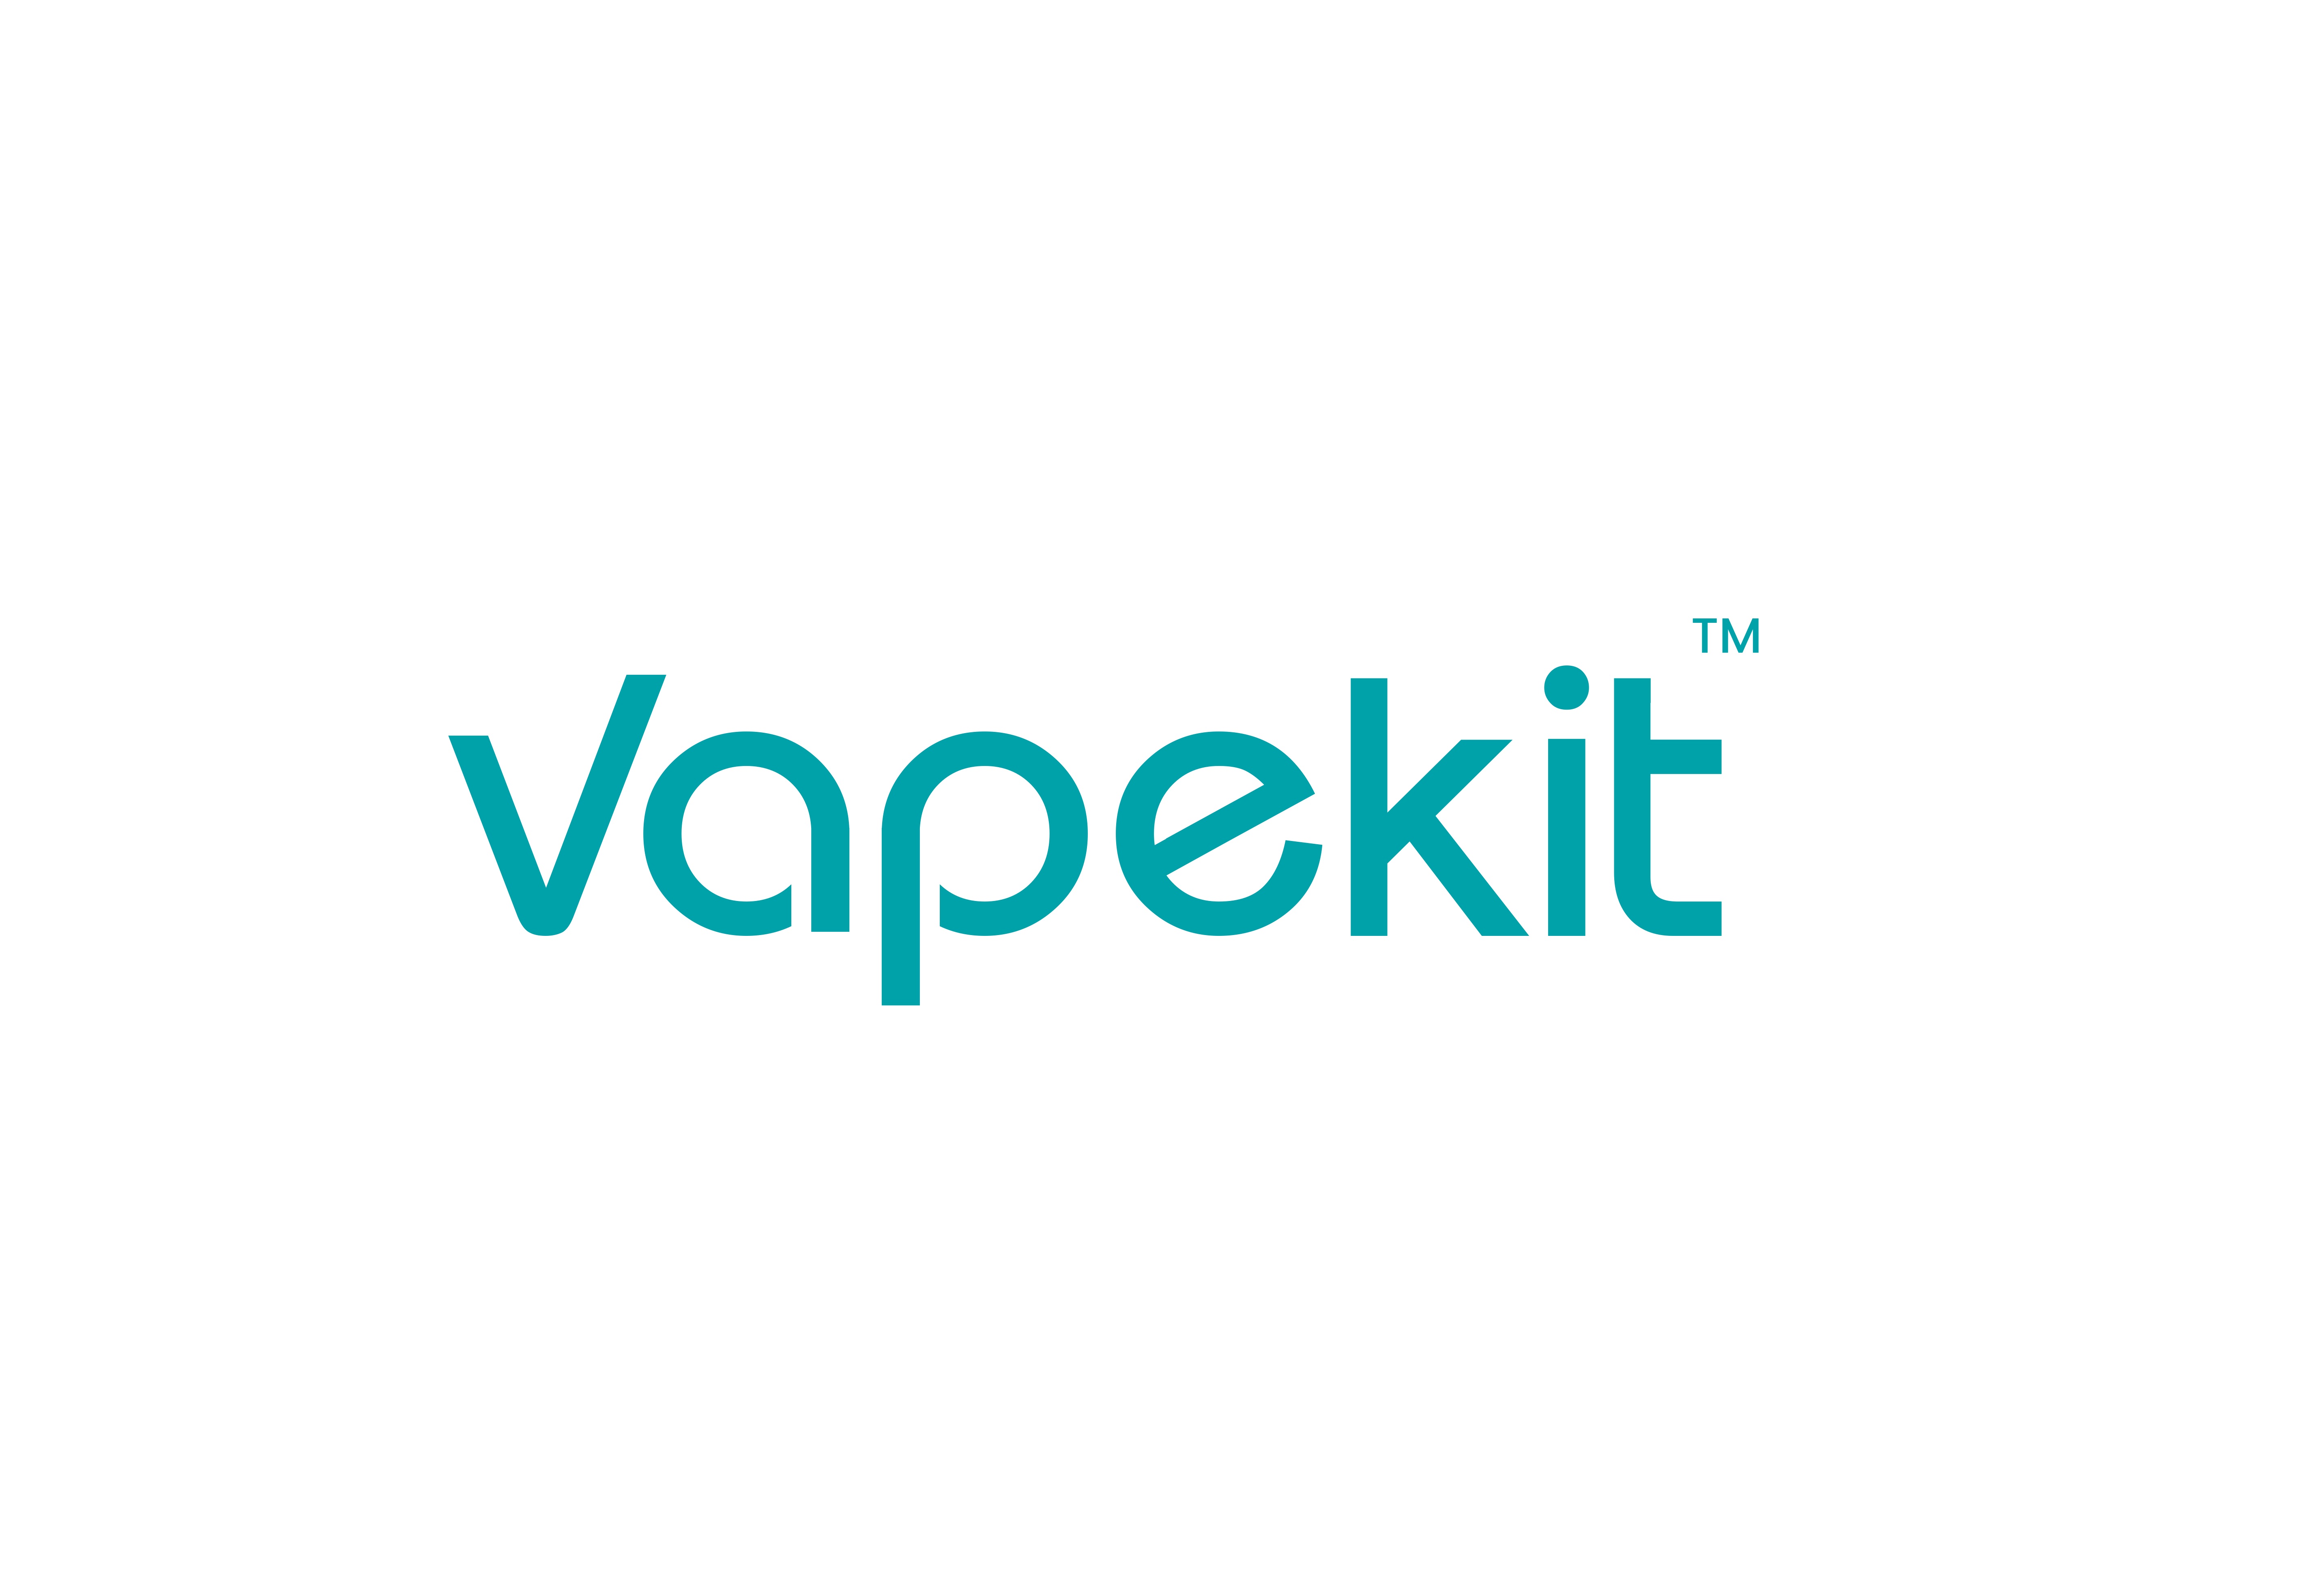 VapeKit.co.uk